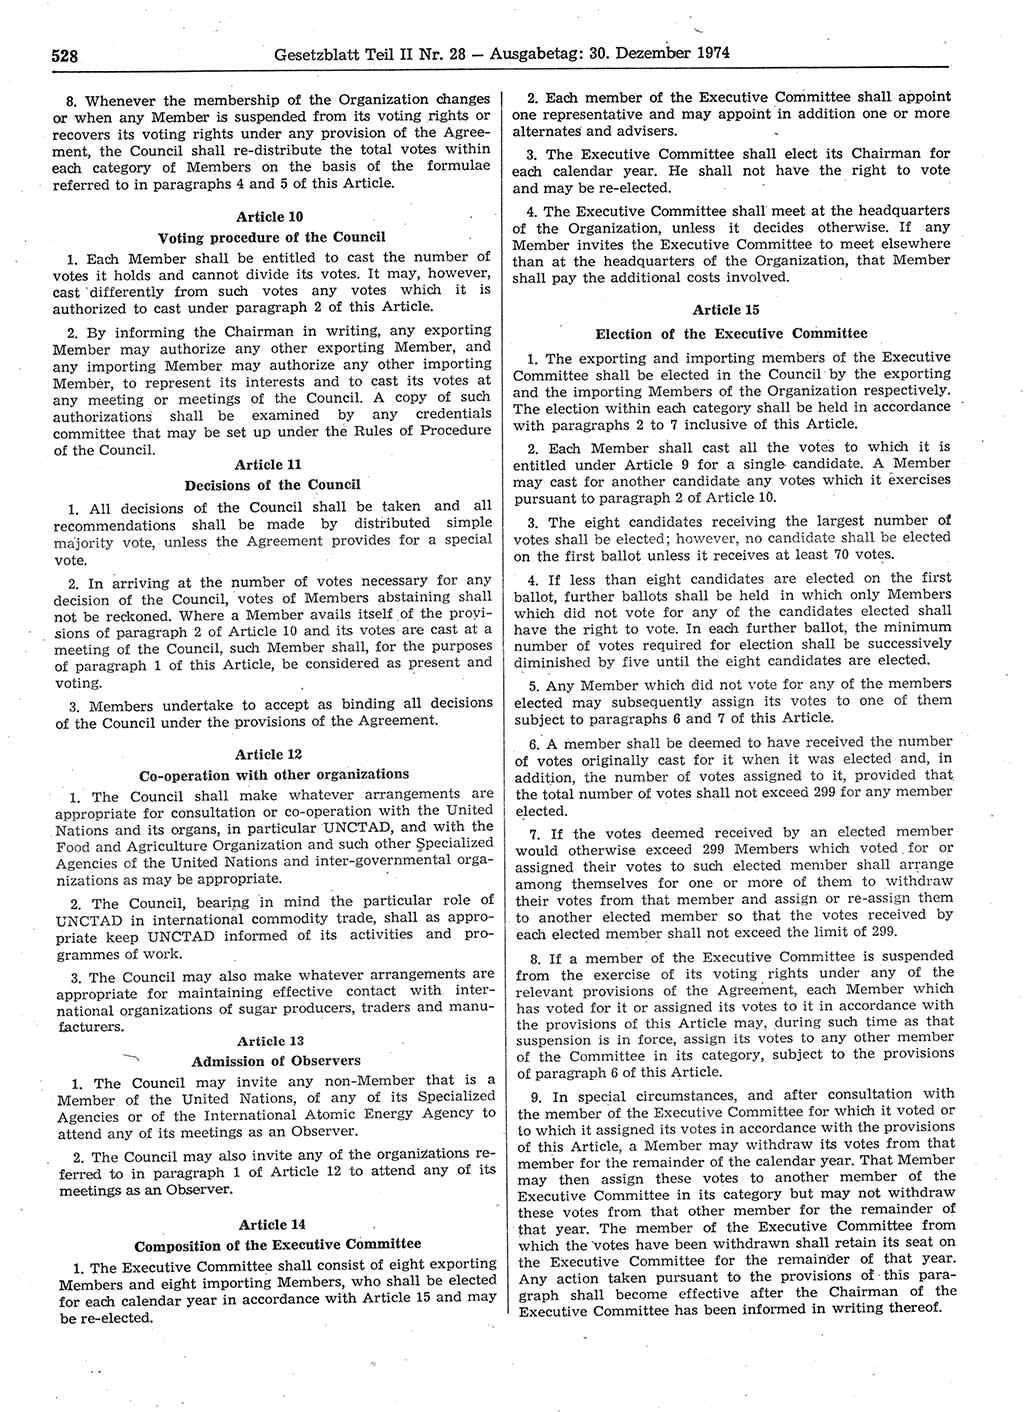 Gesetzblatt (GBl.) der Deutschen Demokratischen Republik (DDR) Teil ⅠⅠ 1974, Seite 528 (GBl. DDR ⅠⅠ 1974, S. 528)